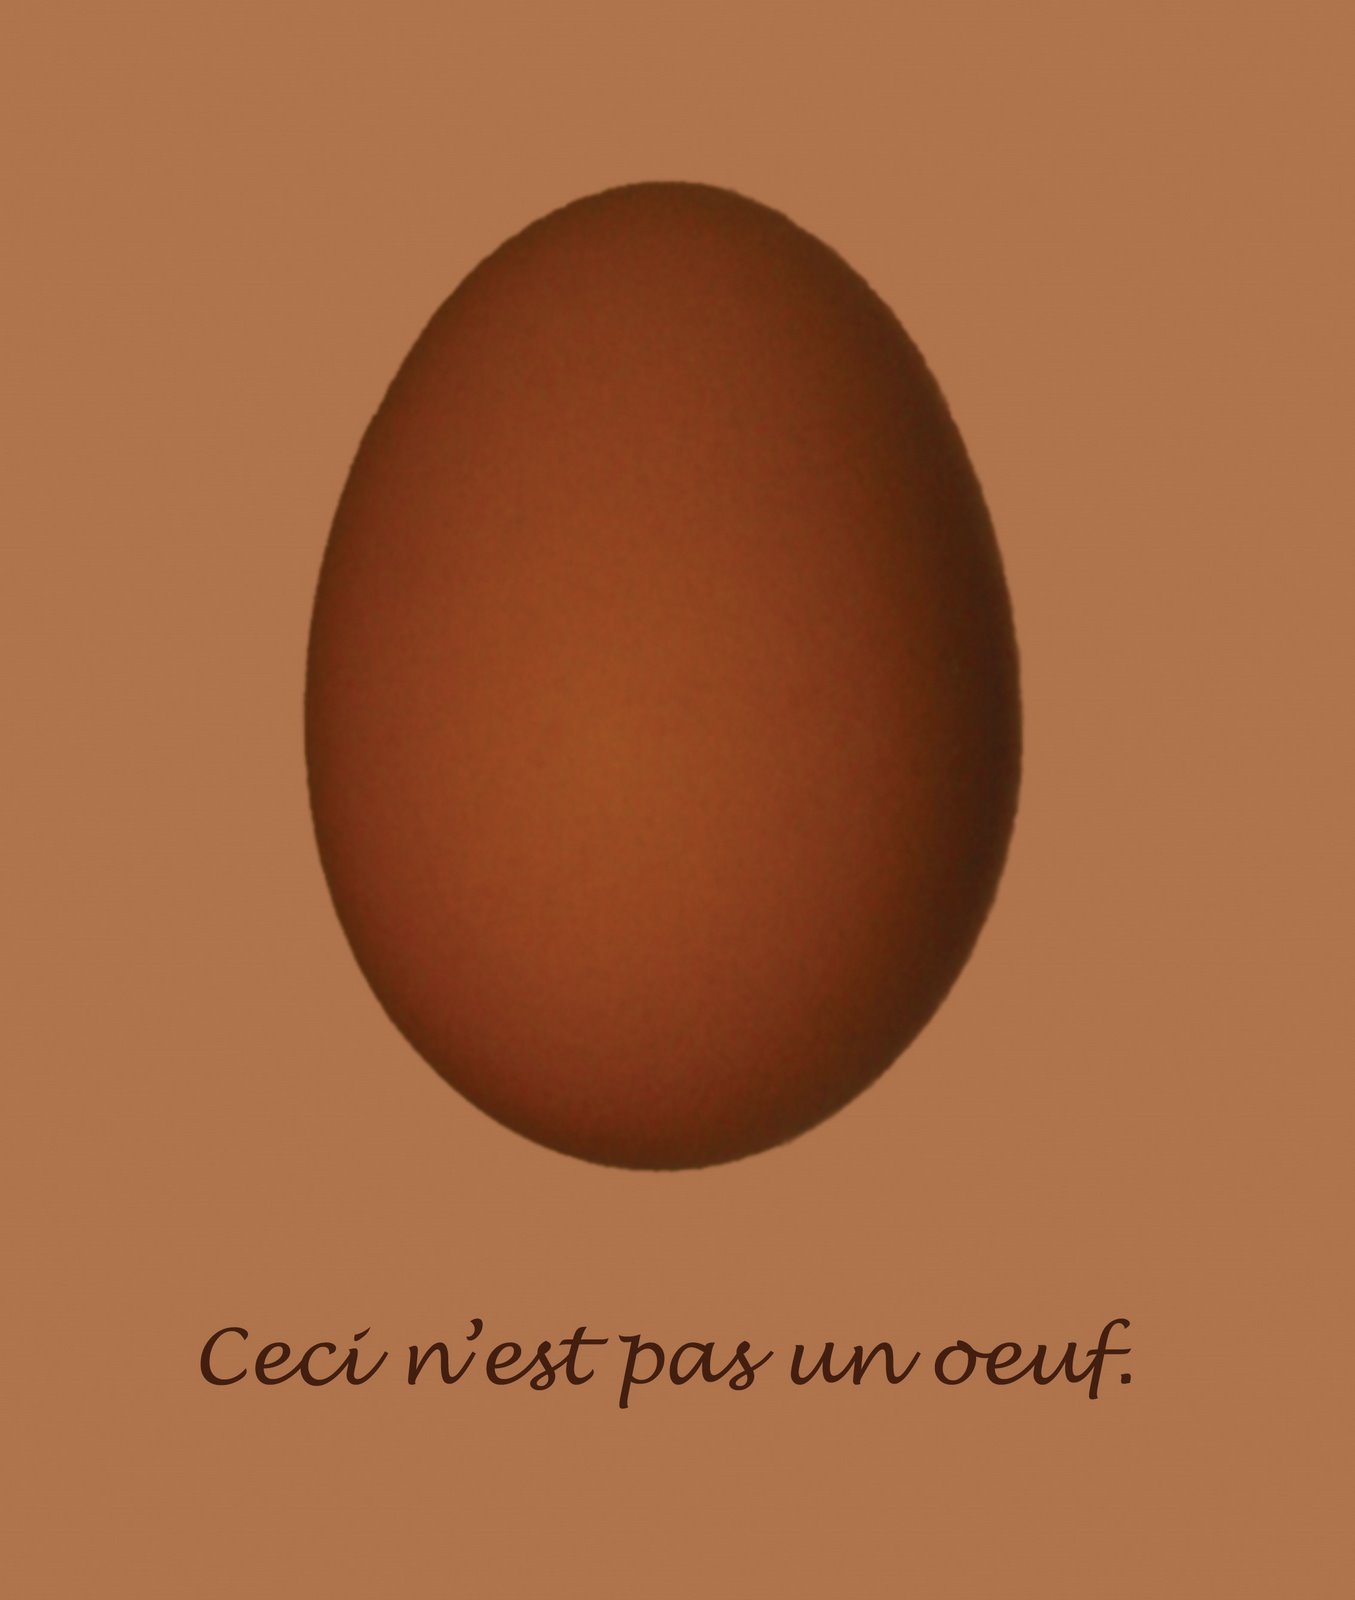 [the-egg.jpg]